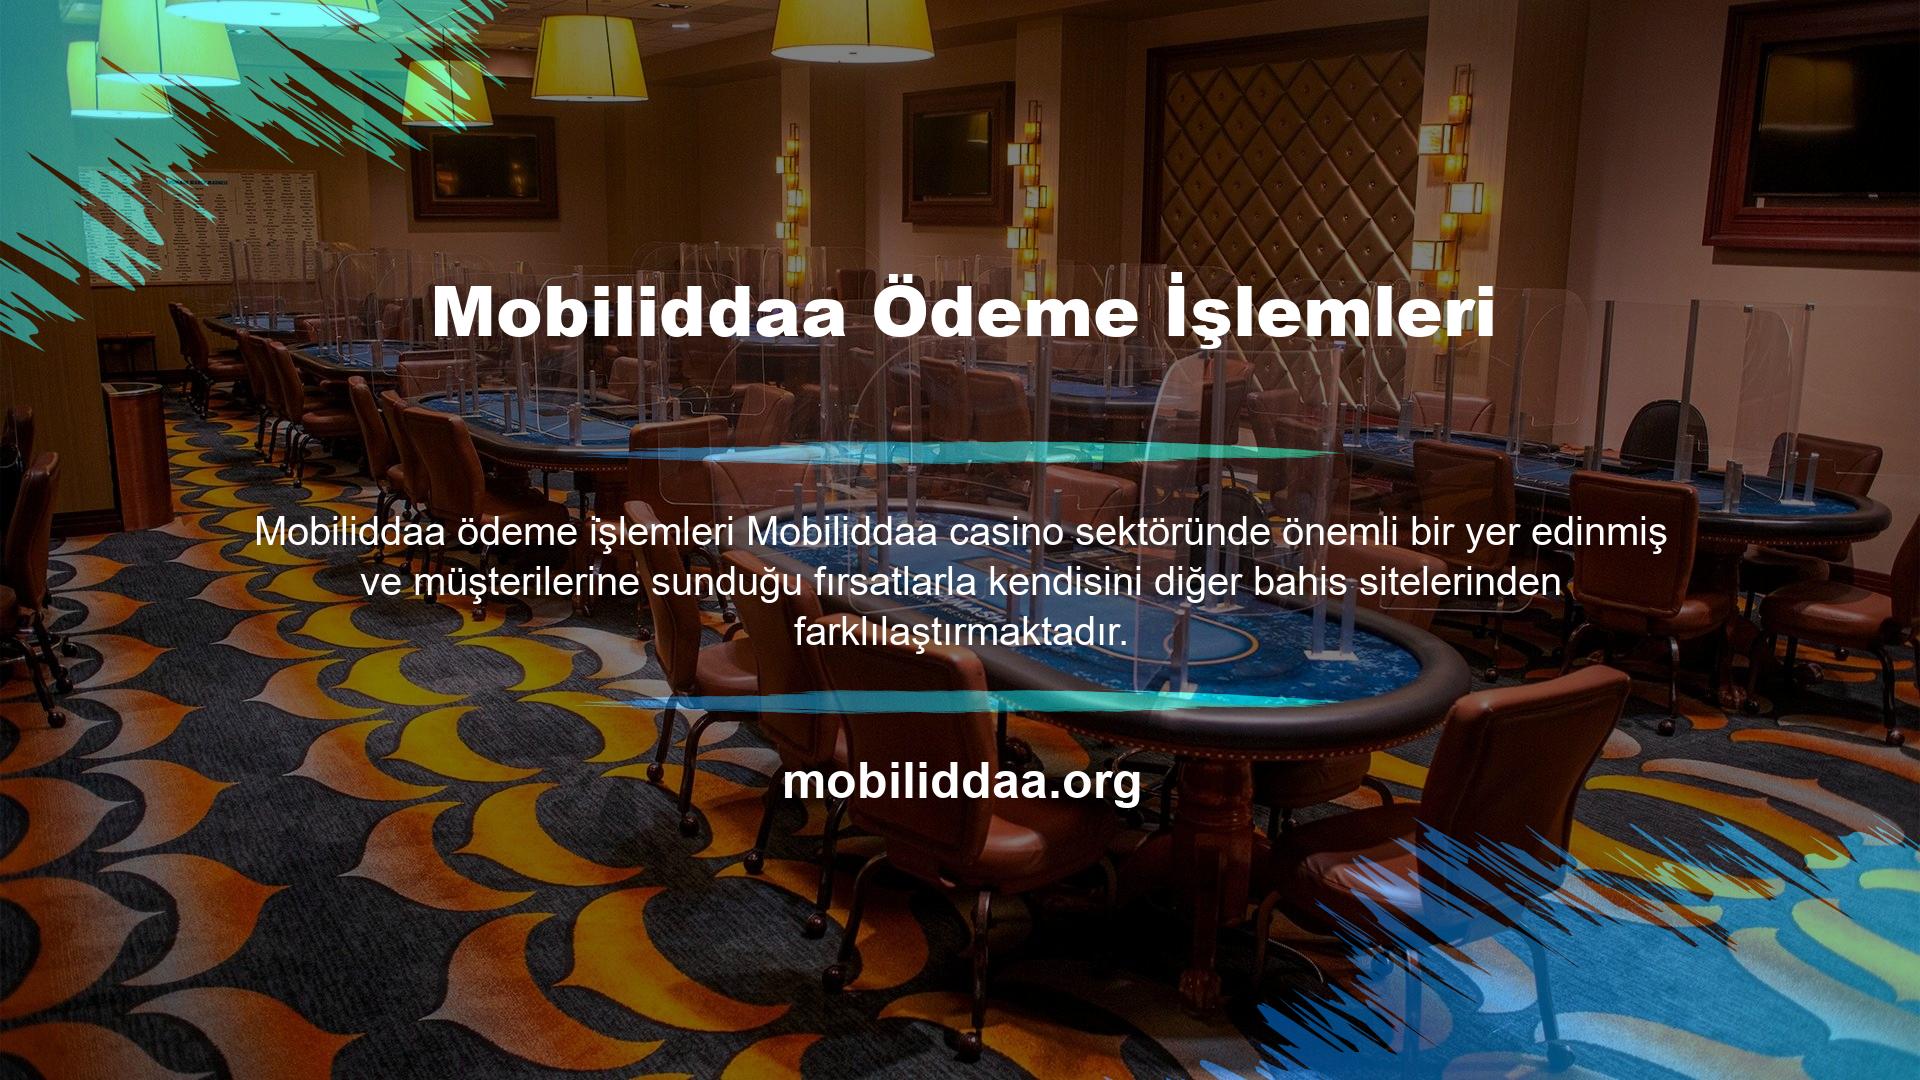 Seçenek çeşitliliği bulunan Mobiliddaa, müşteri memnuniyeti, çeşitli bonusları, canlı desteği ve en önemlisi bahis seçenekleriyle müşterilerinin ilgisini çekmektedir